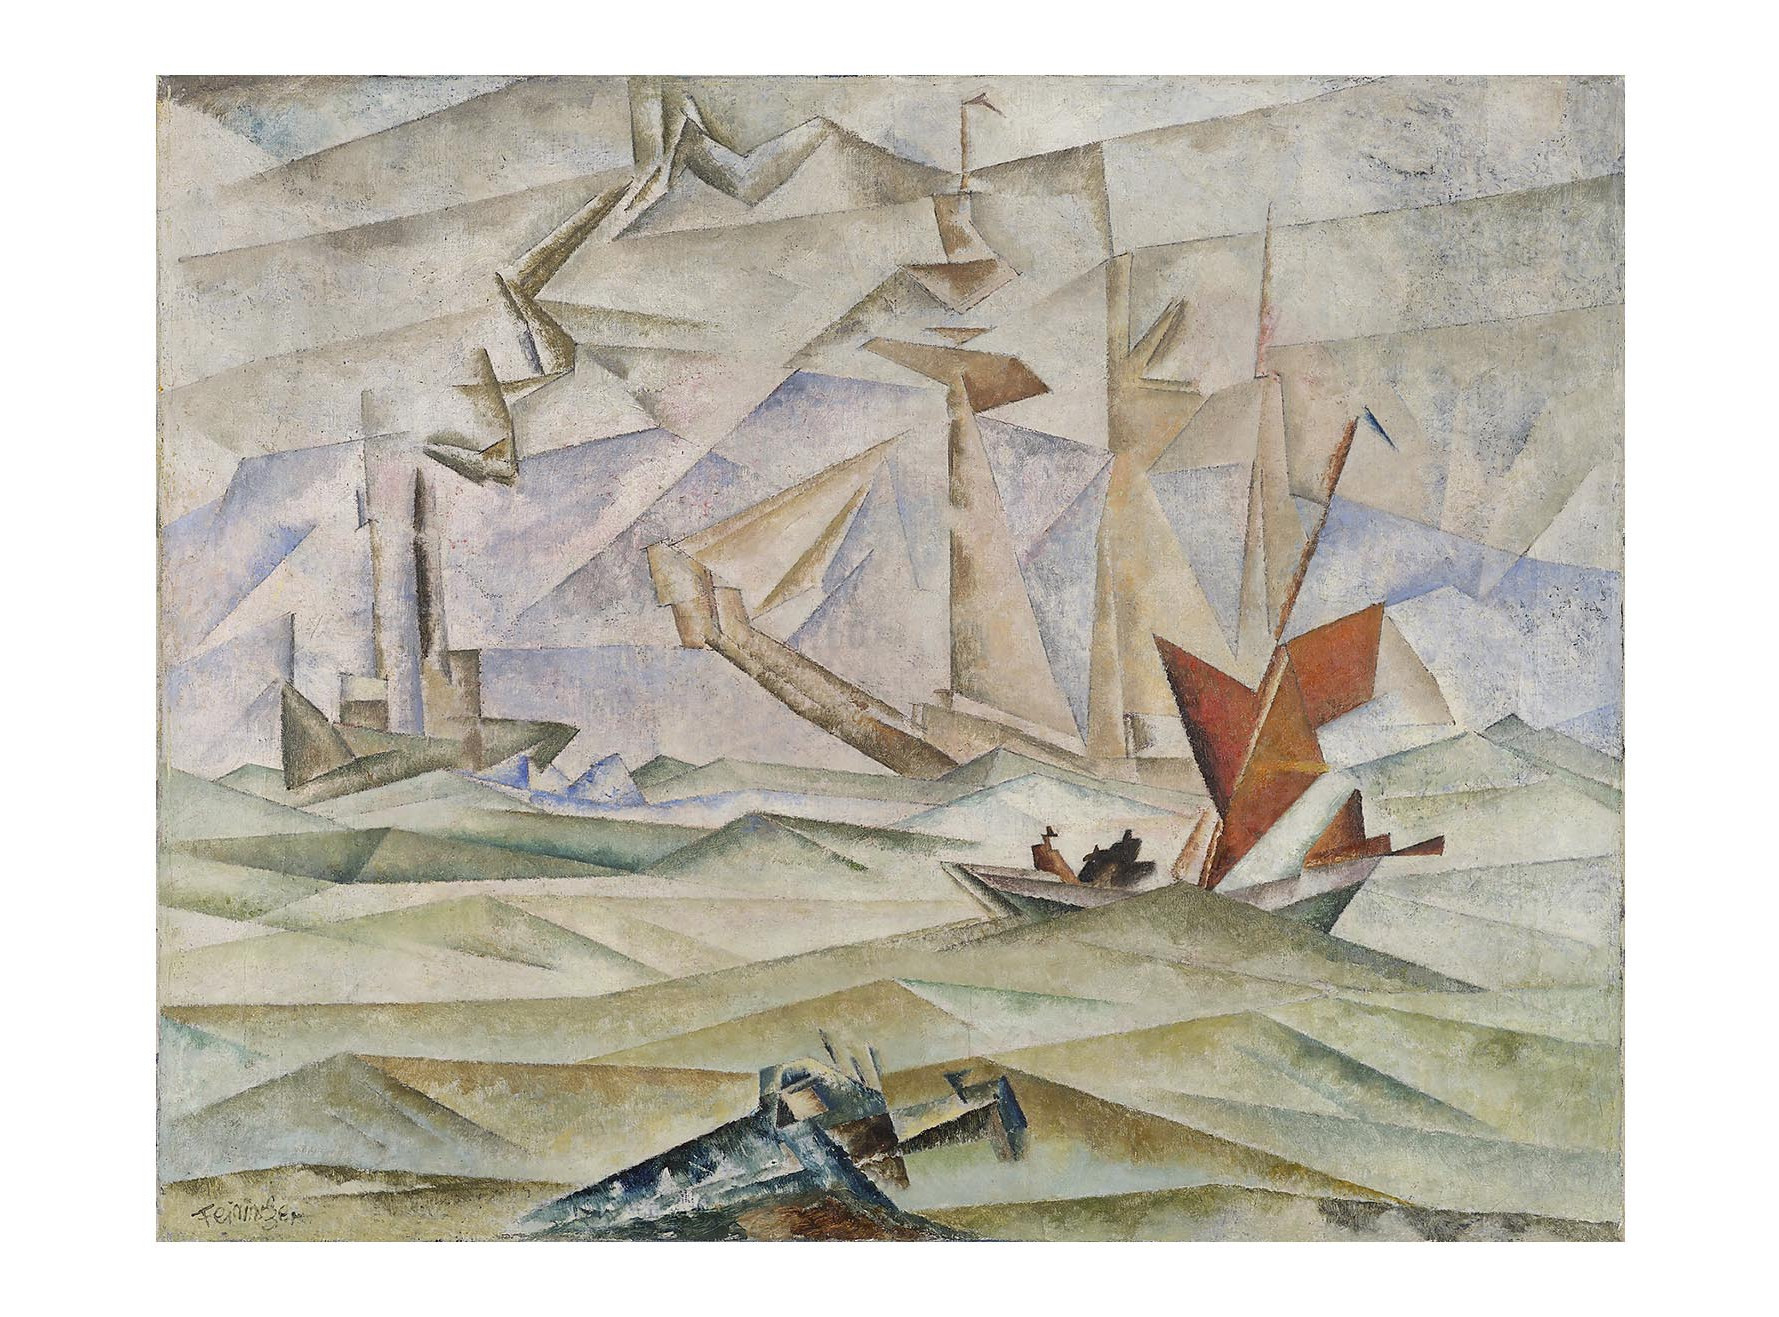 Die Abbildung zeigt das Gemälde "Marine", das der Künstler Lyonel Feininger im Jahr 1919 schuf. Es wurde vom Germanischen Nationalmuseum im Jahr 2022 mit Unterstützung einer anonymen Stiftung erworben. Das Copyright liegt bei der VG Bildkunst Bonn.